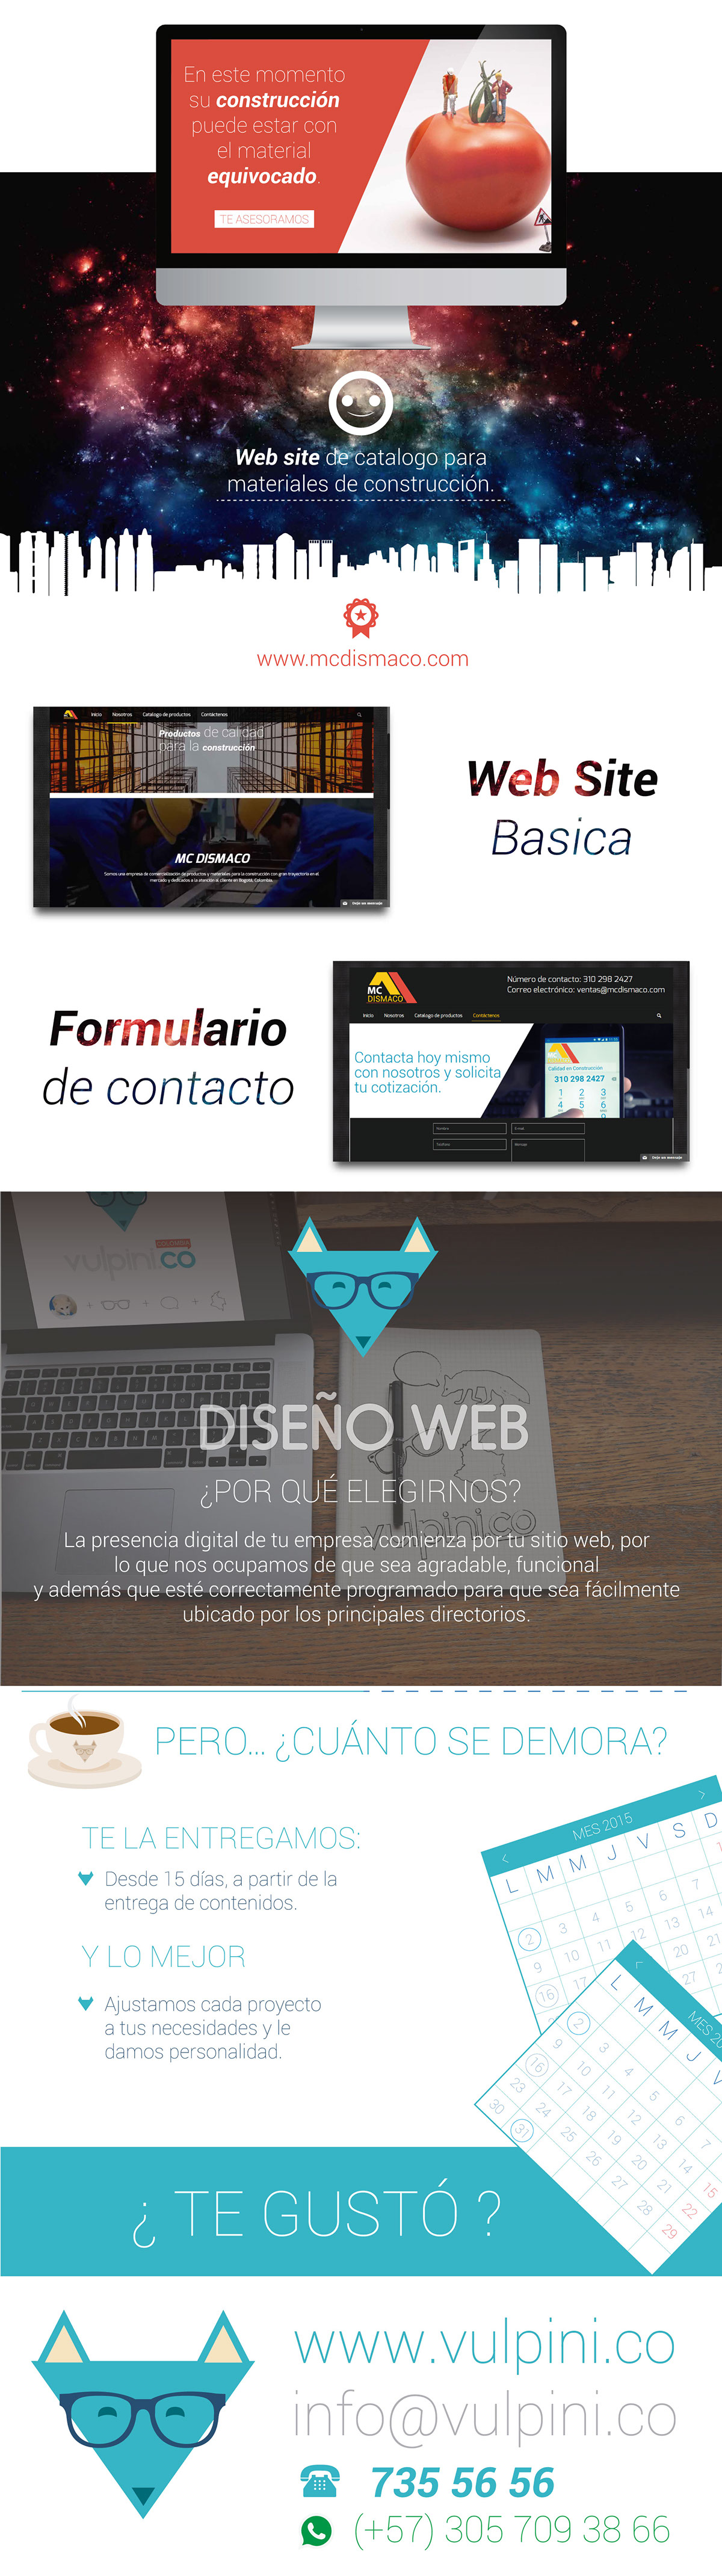 Diseño web construccion desarrollo web pagina web web site Catalago Online